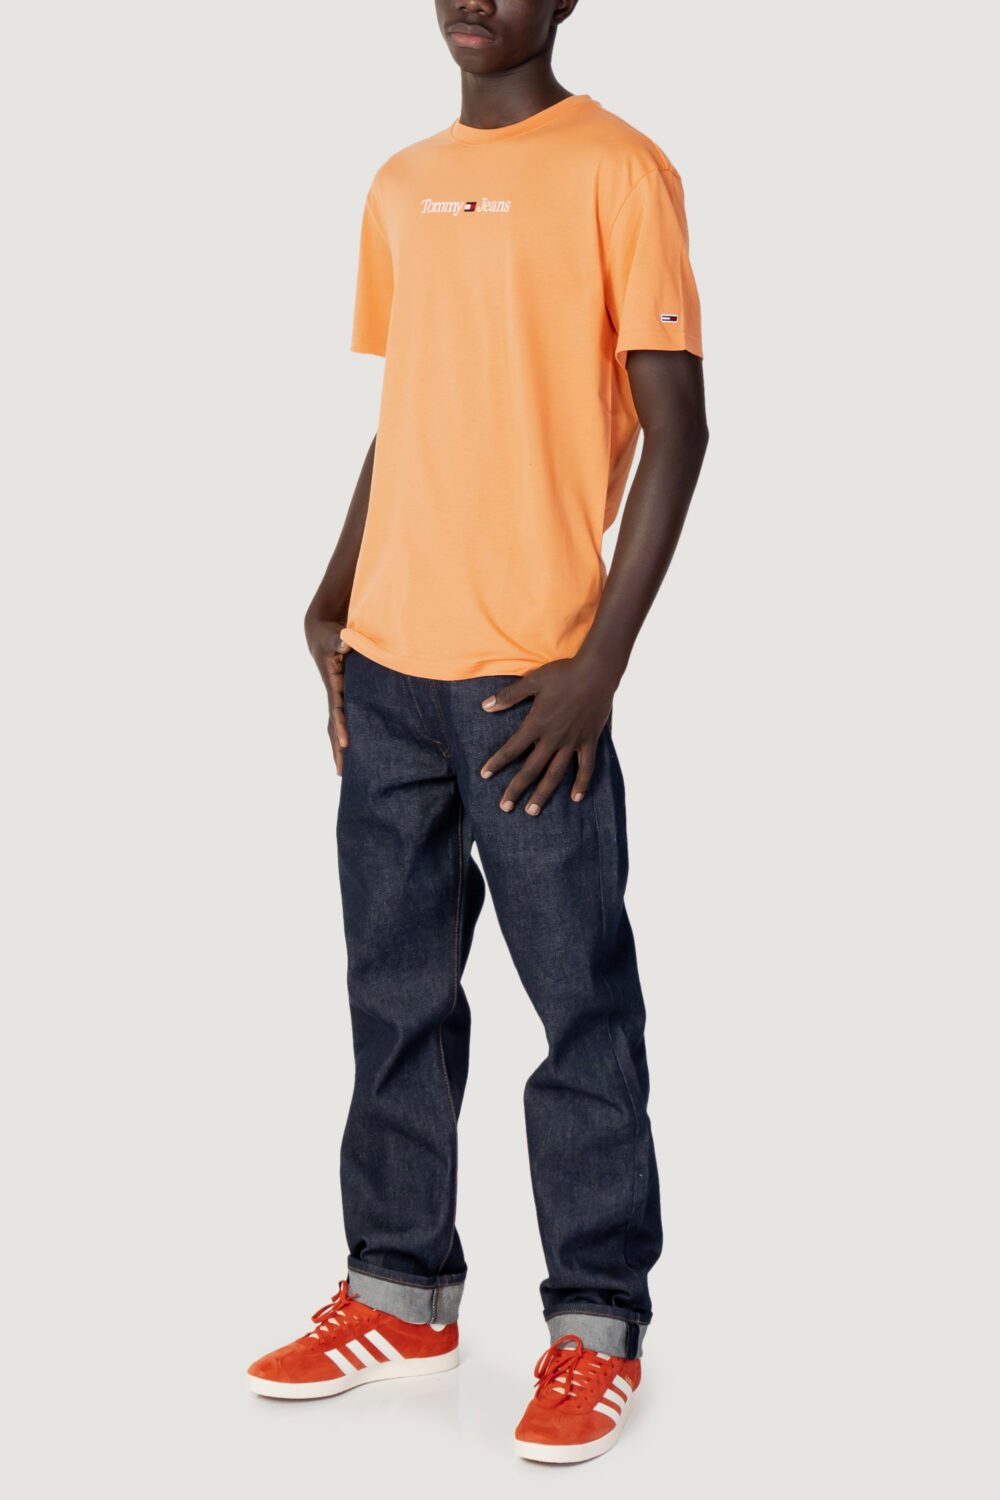 T-shirt Tommy Hilfiger Jeans TJM CLASSIC LINEAR L Arancione - Foto 3